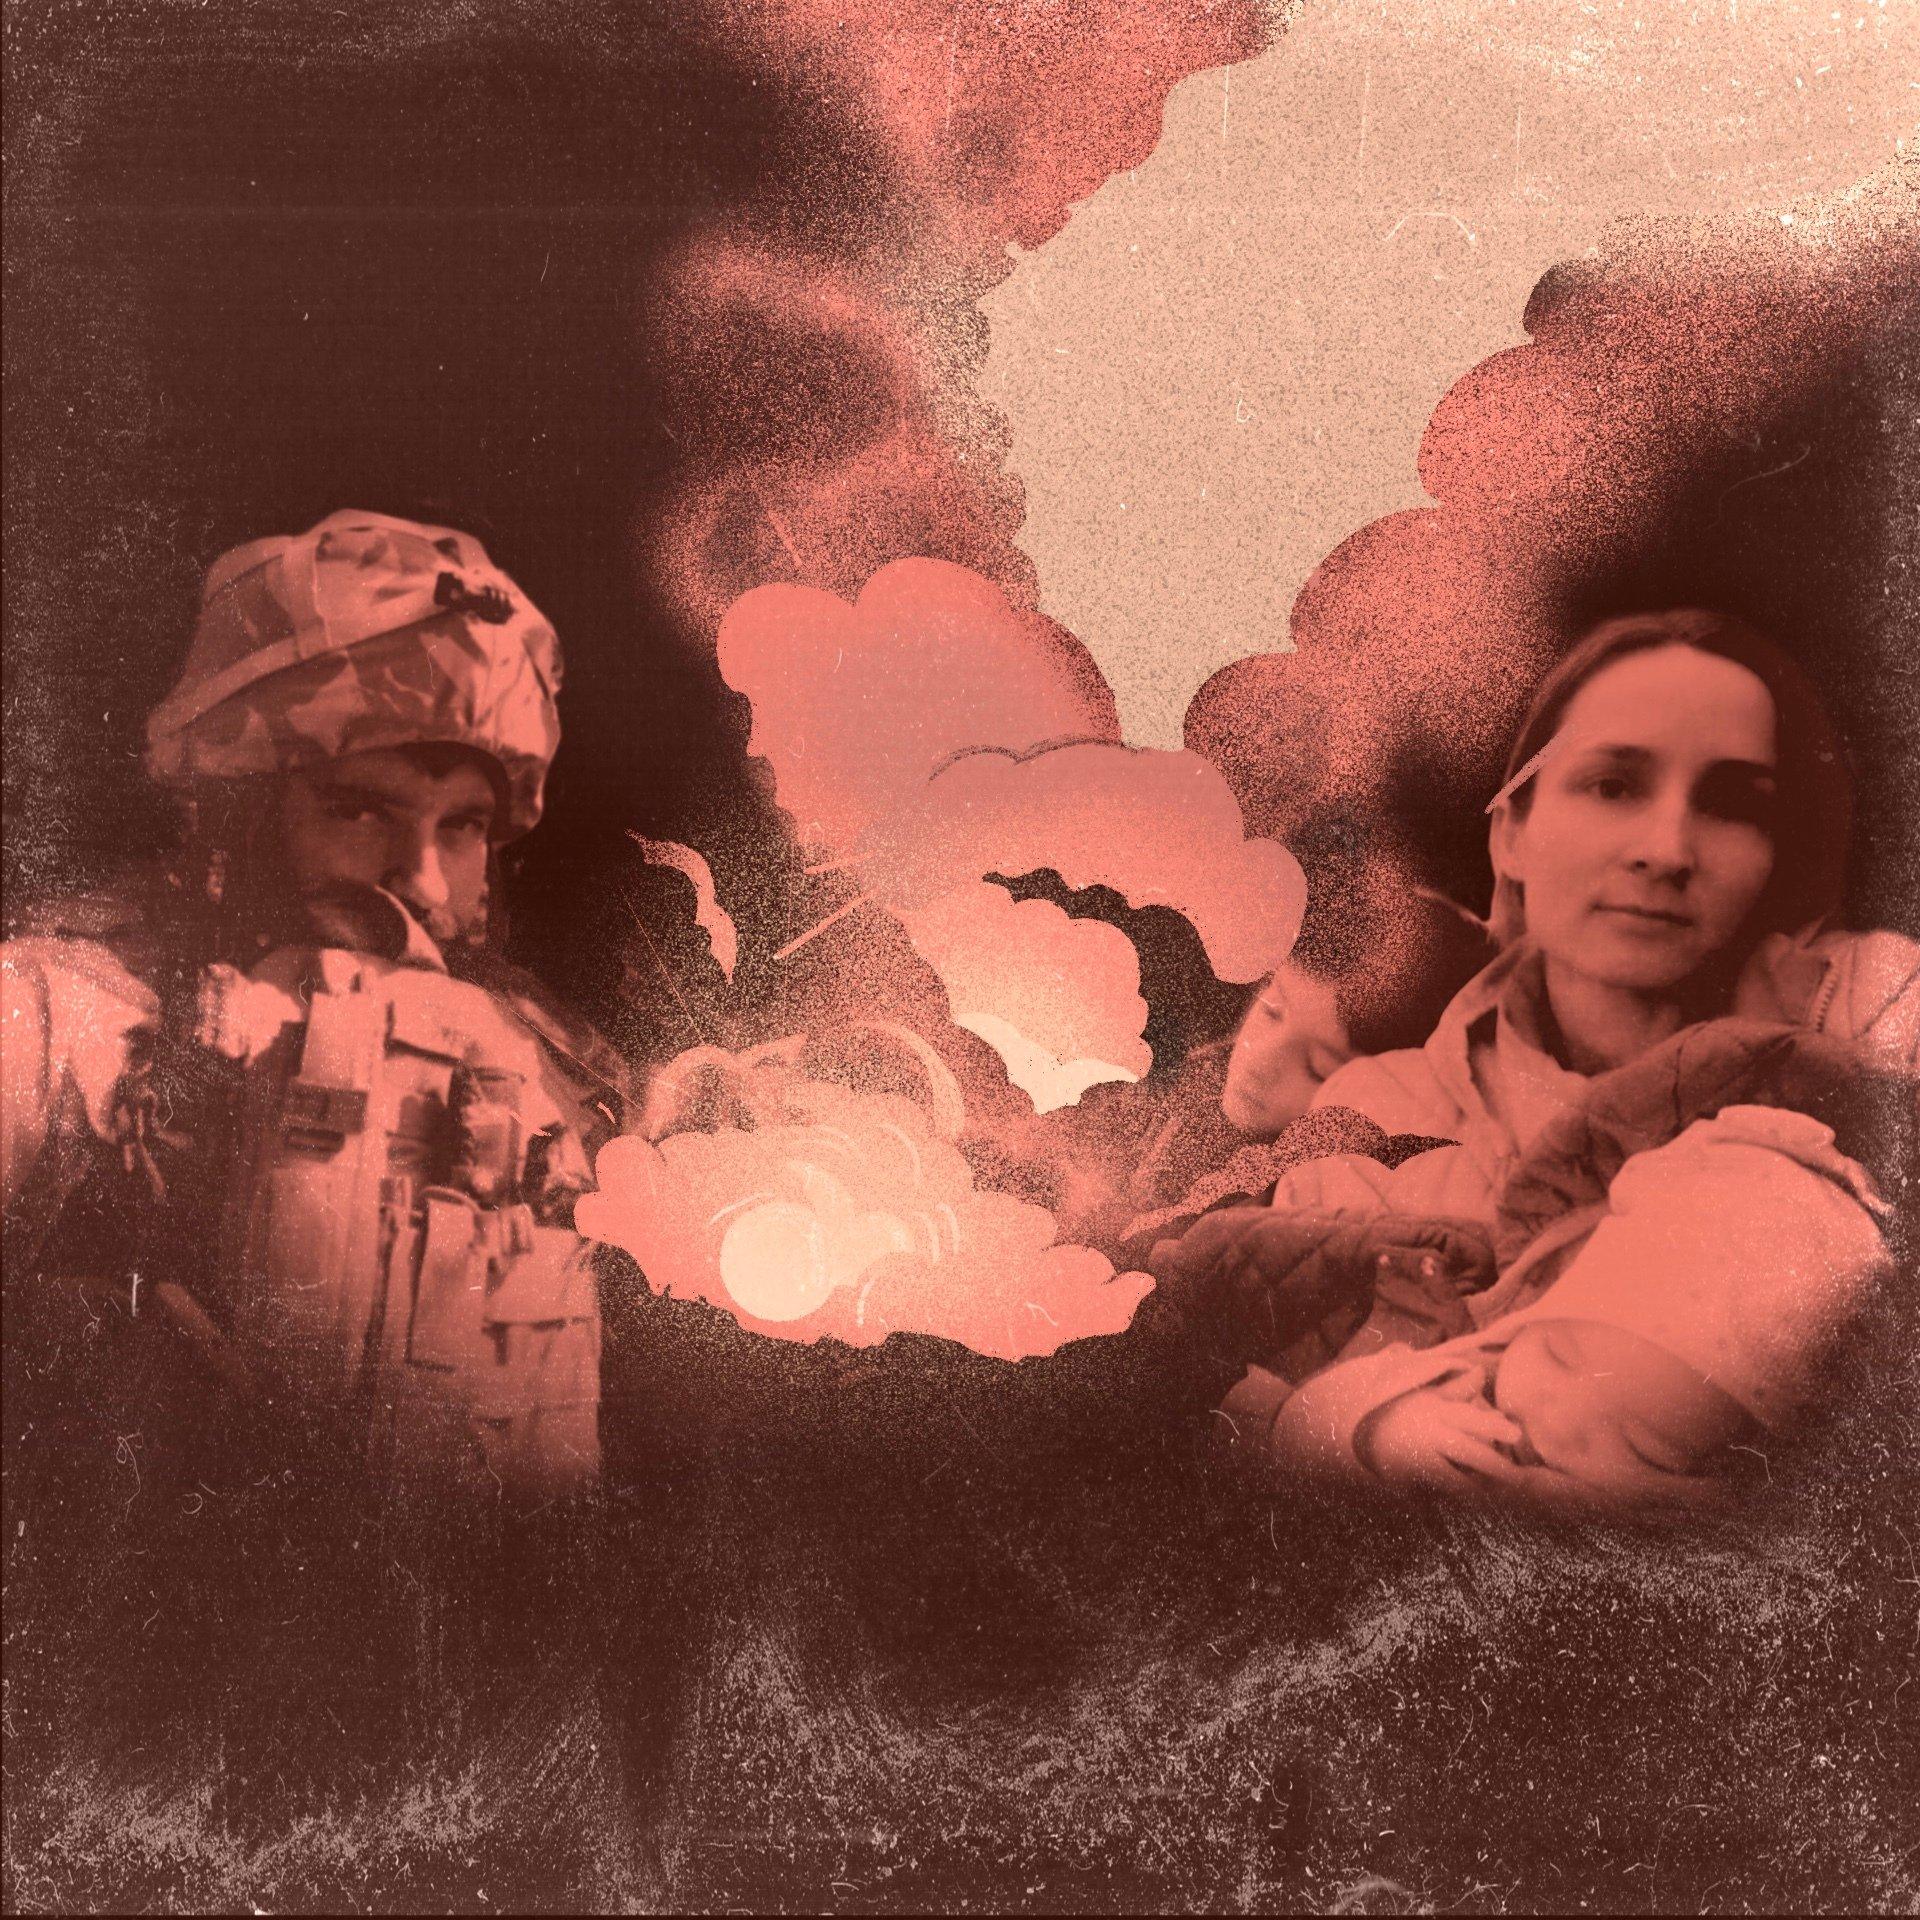 Ilustracja przedstawiająca żołnierza w hełmie i kobietę, oddzielonych chmurami